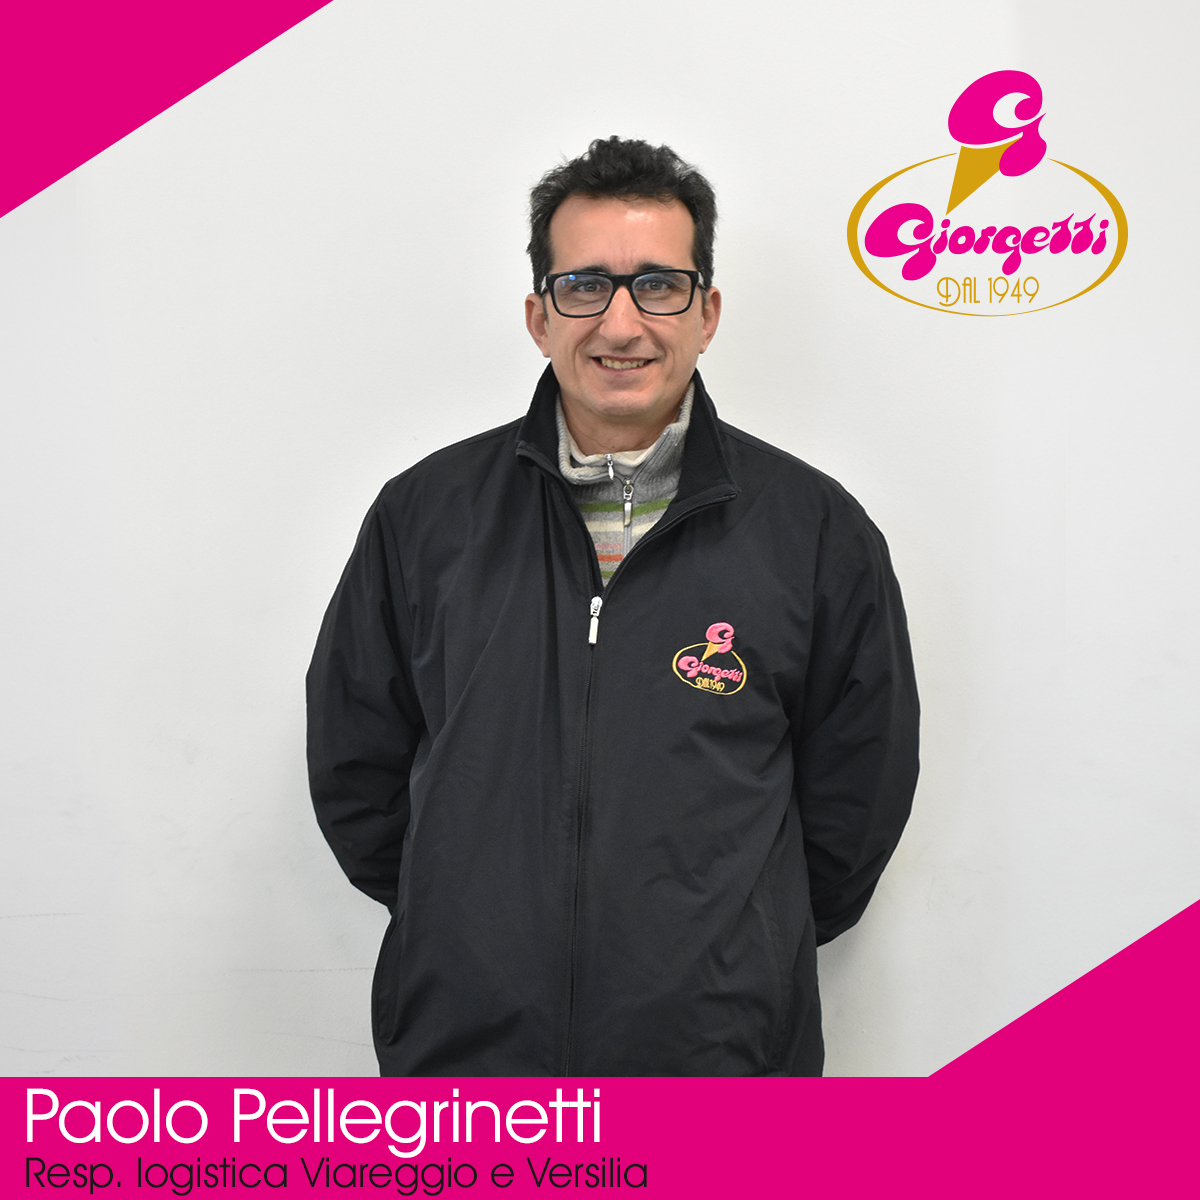 Paolo Pellegrinetti